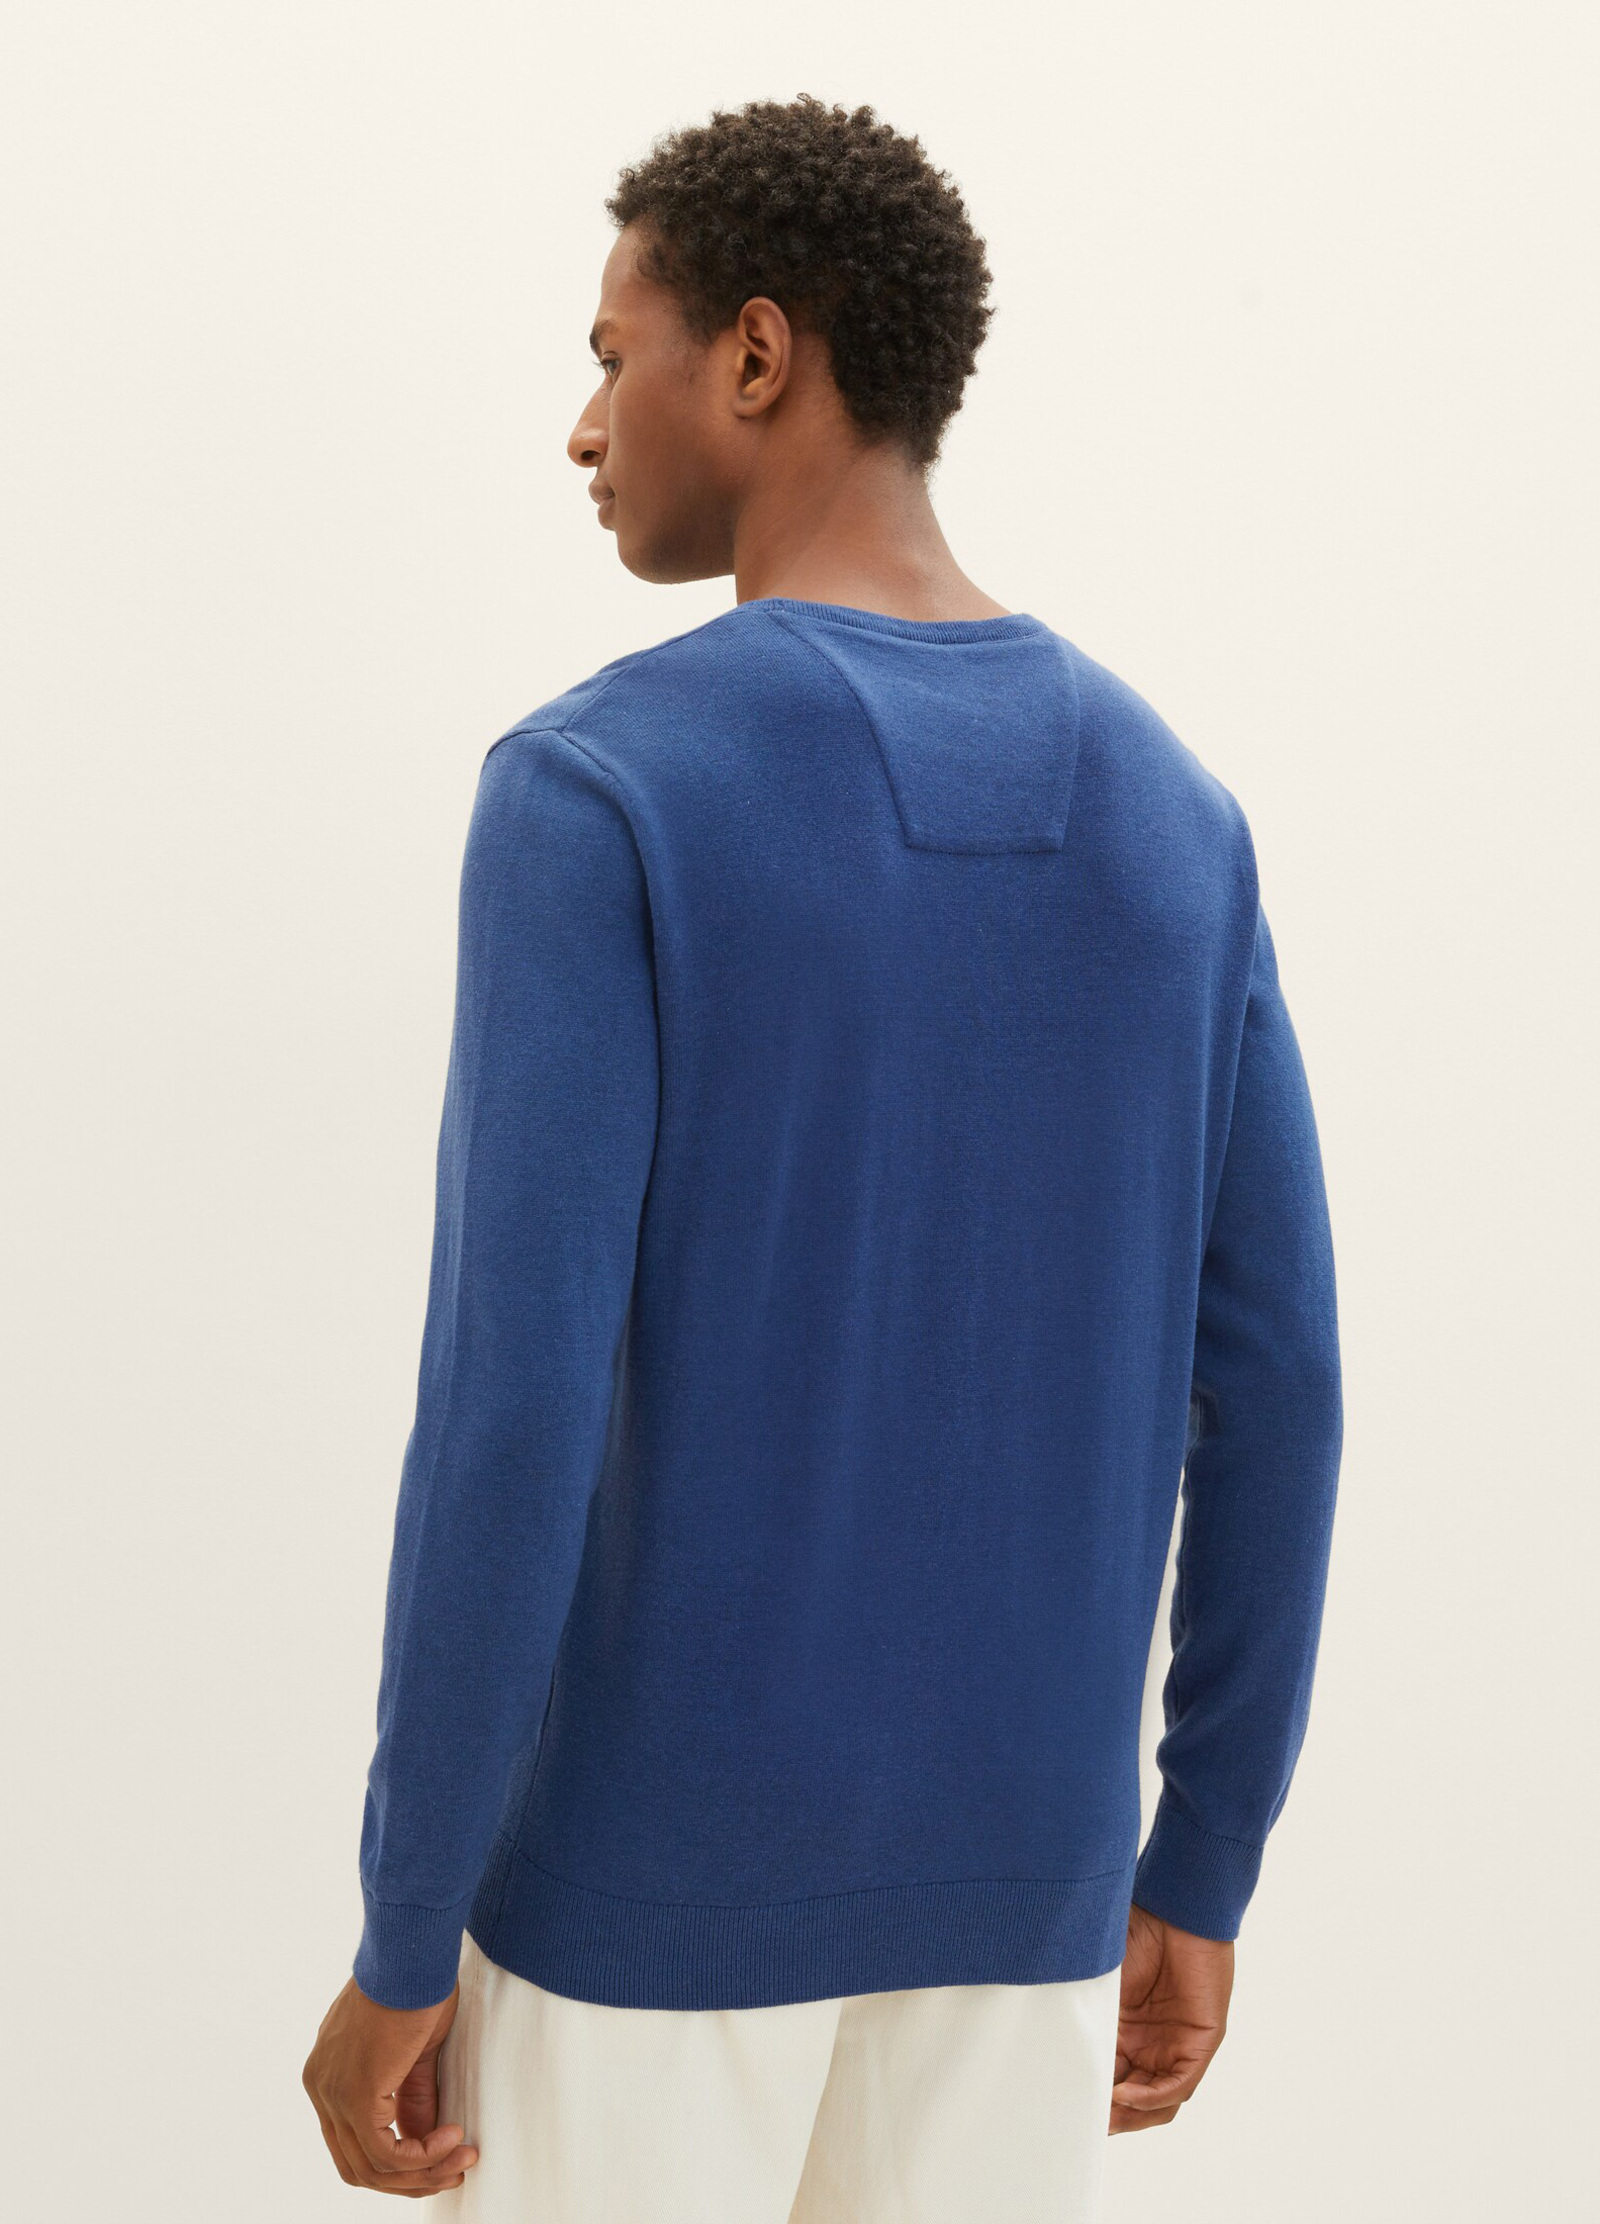 Tom Tailor® Mottled Knitted Sweater - Hockey Blue Dark Melange Size L